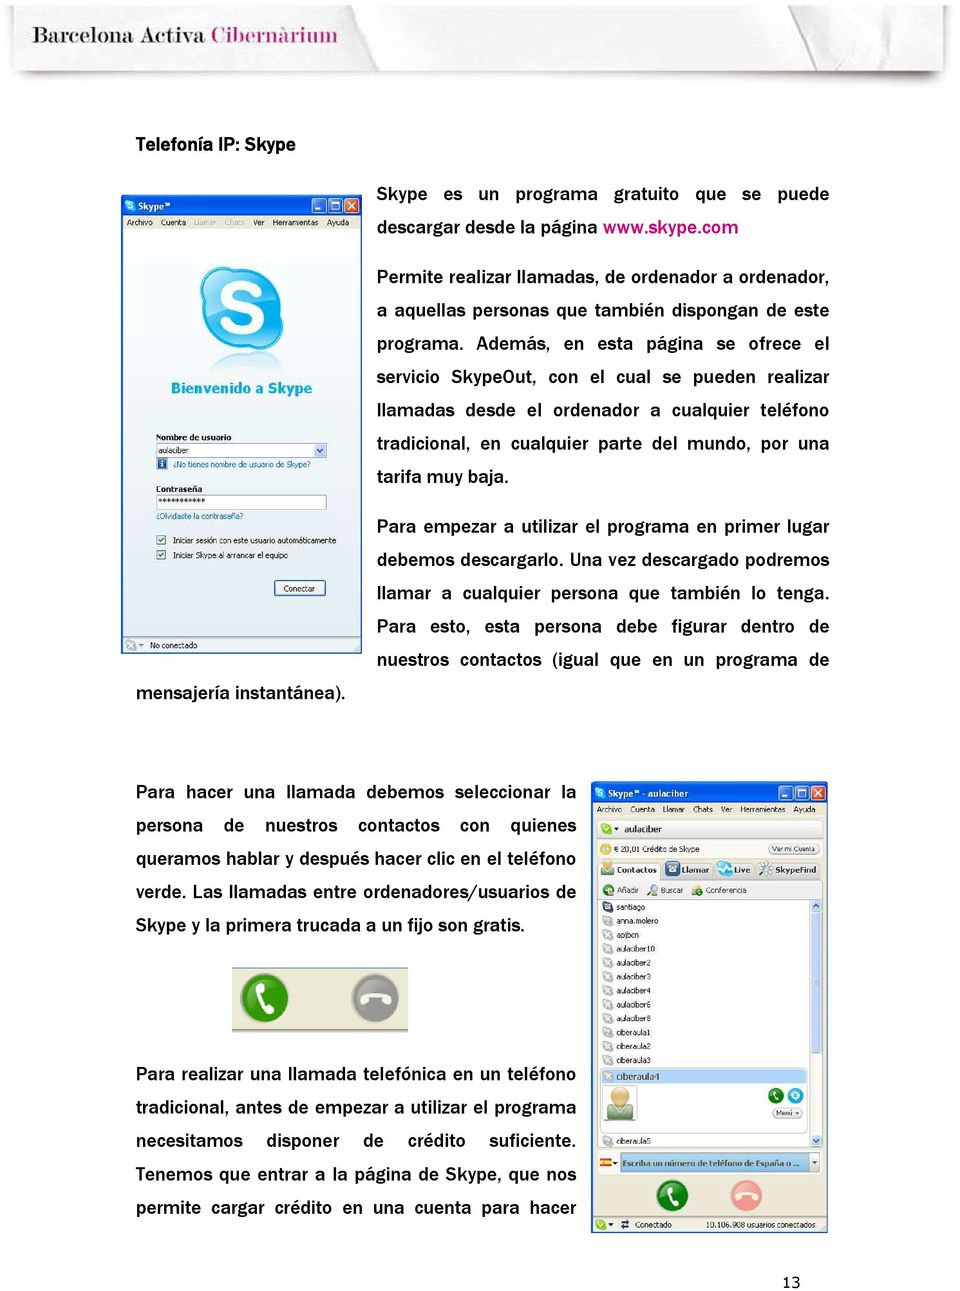 Además, en esta página se ofrece el servicio SkypeOut, con el cual se pueden realizar llamadas desde el ordenador a cualquier teléfono tradicional, en cualquier parte del mundo, por una tarifa muy